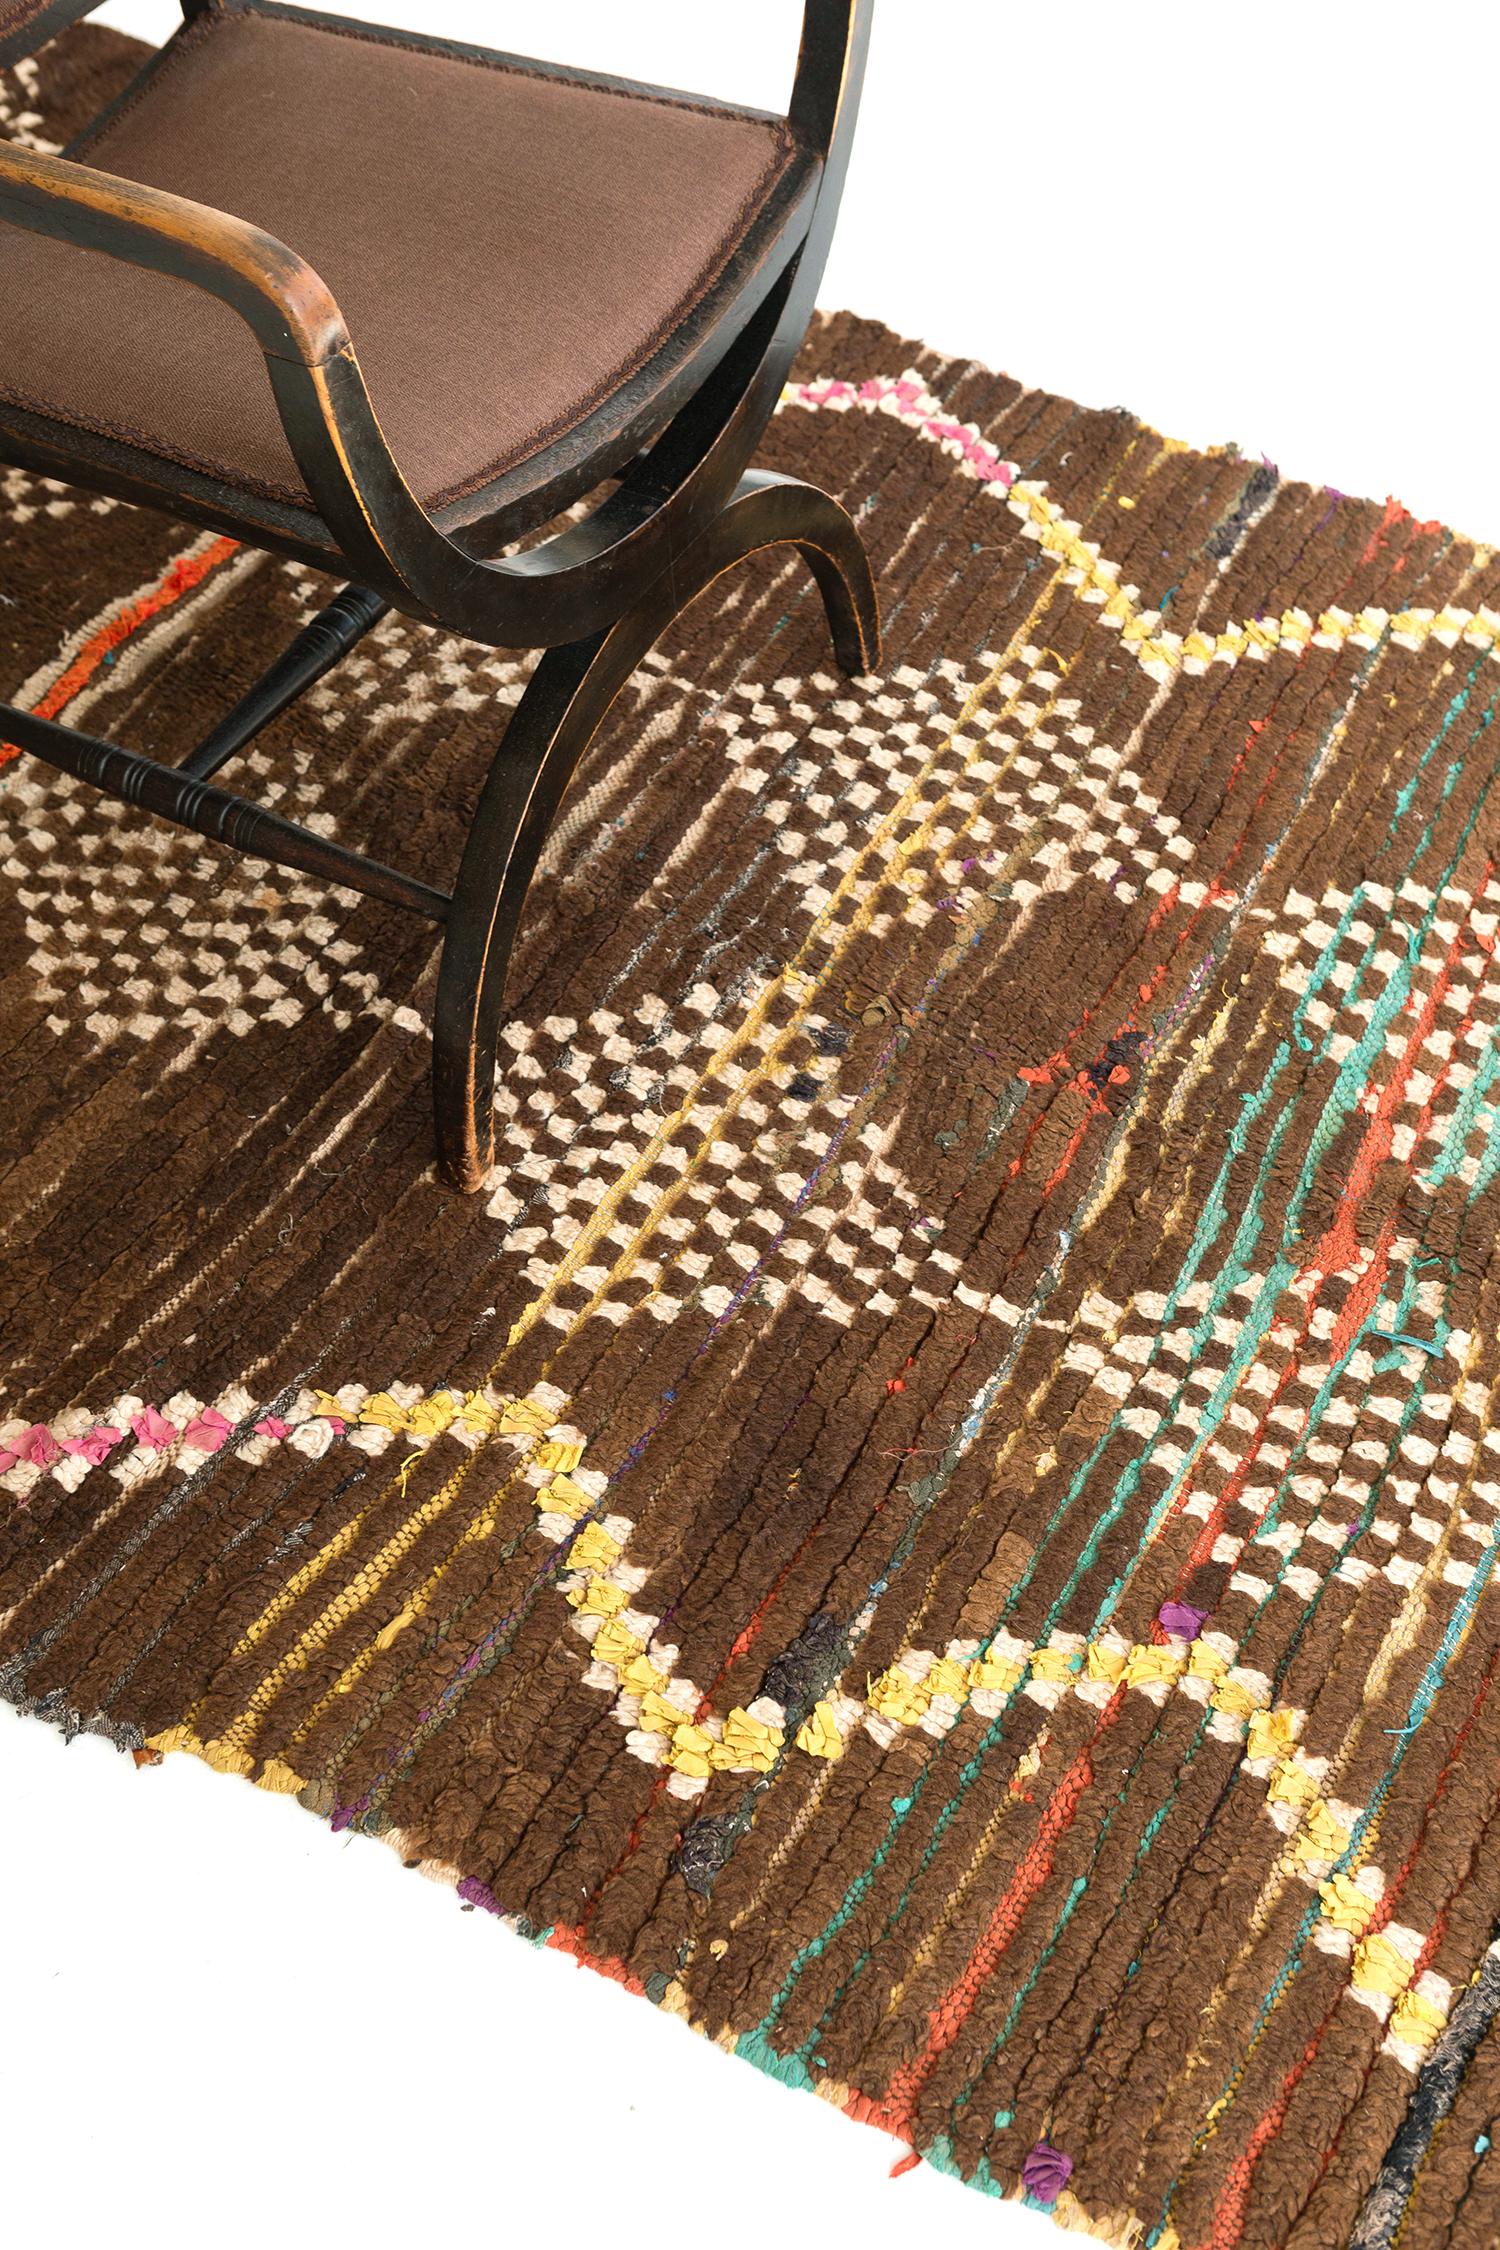 Dieser wunderbare Teppich mit seinen klar definierten Chevrons und zwanzig karierten Rauten wird Sie definitiv in seinen Bann ziehen, wenn Sie Ihren Blick auf diesen von Rika Atlas inspirierten Vintage Moroccan Rug legen. Mit seinen erdigen,